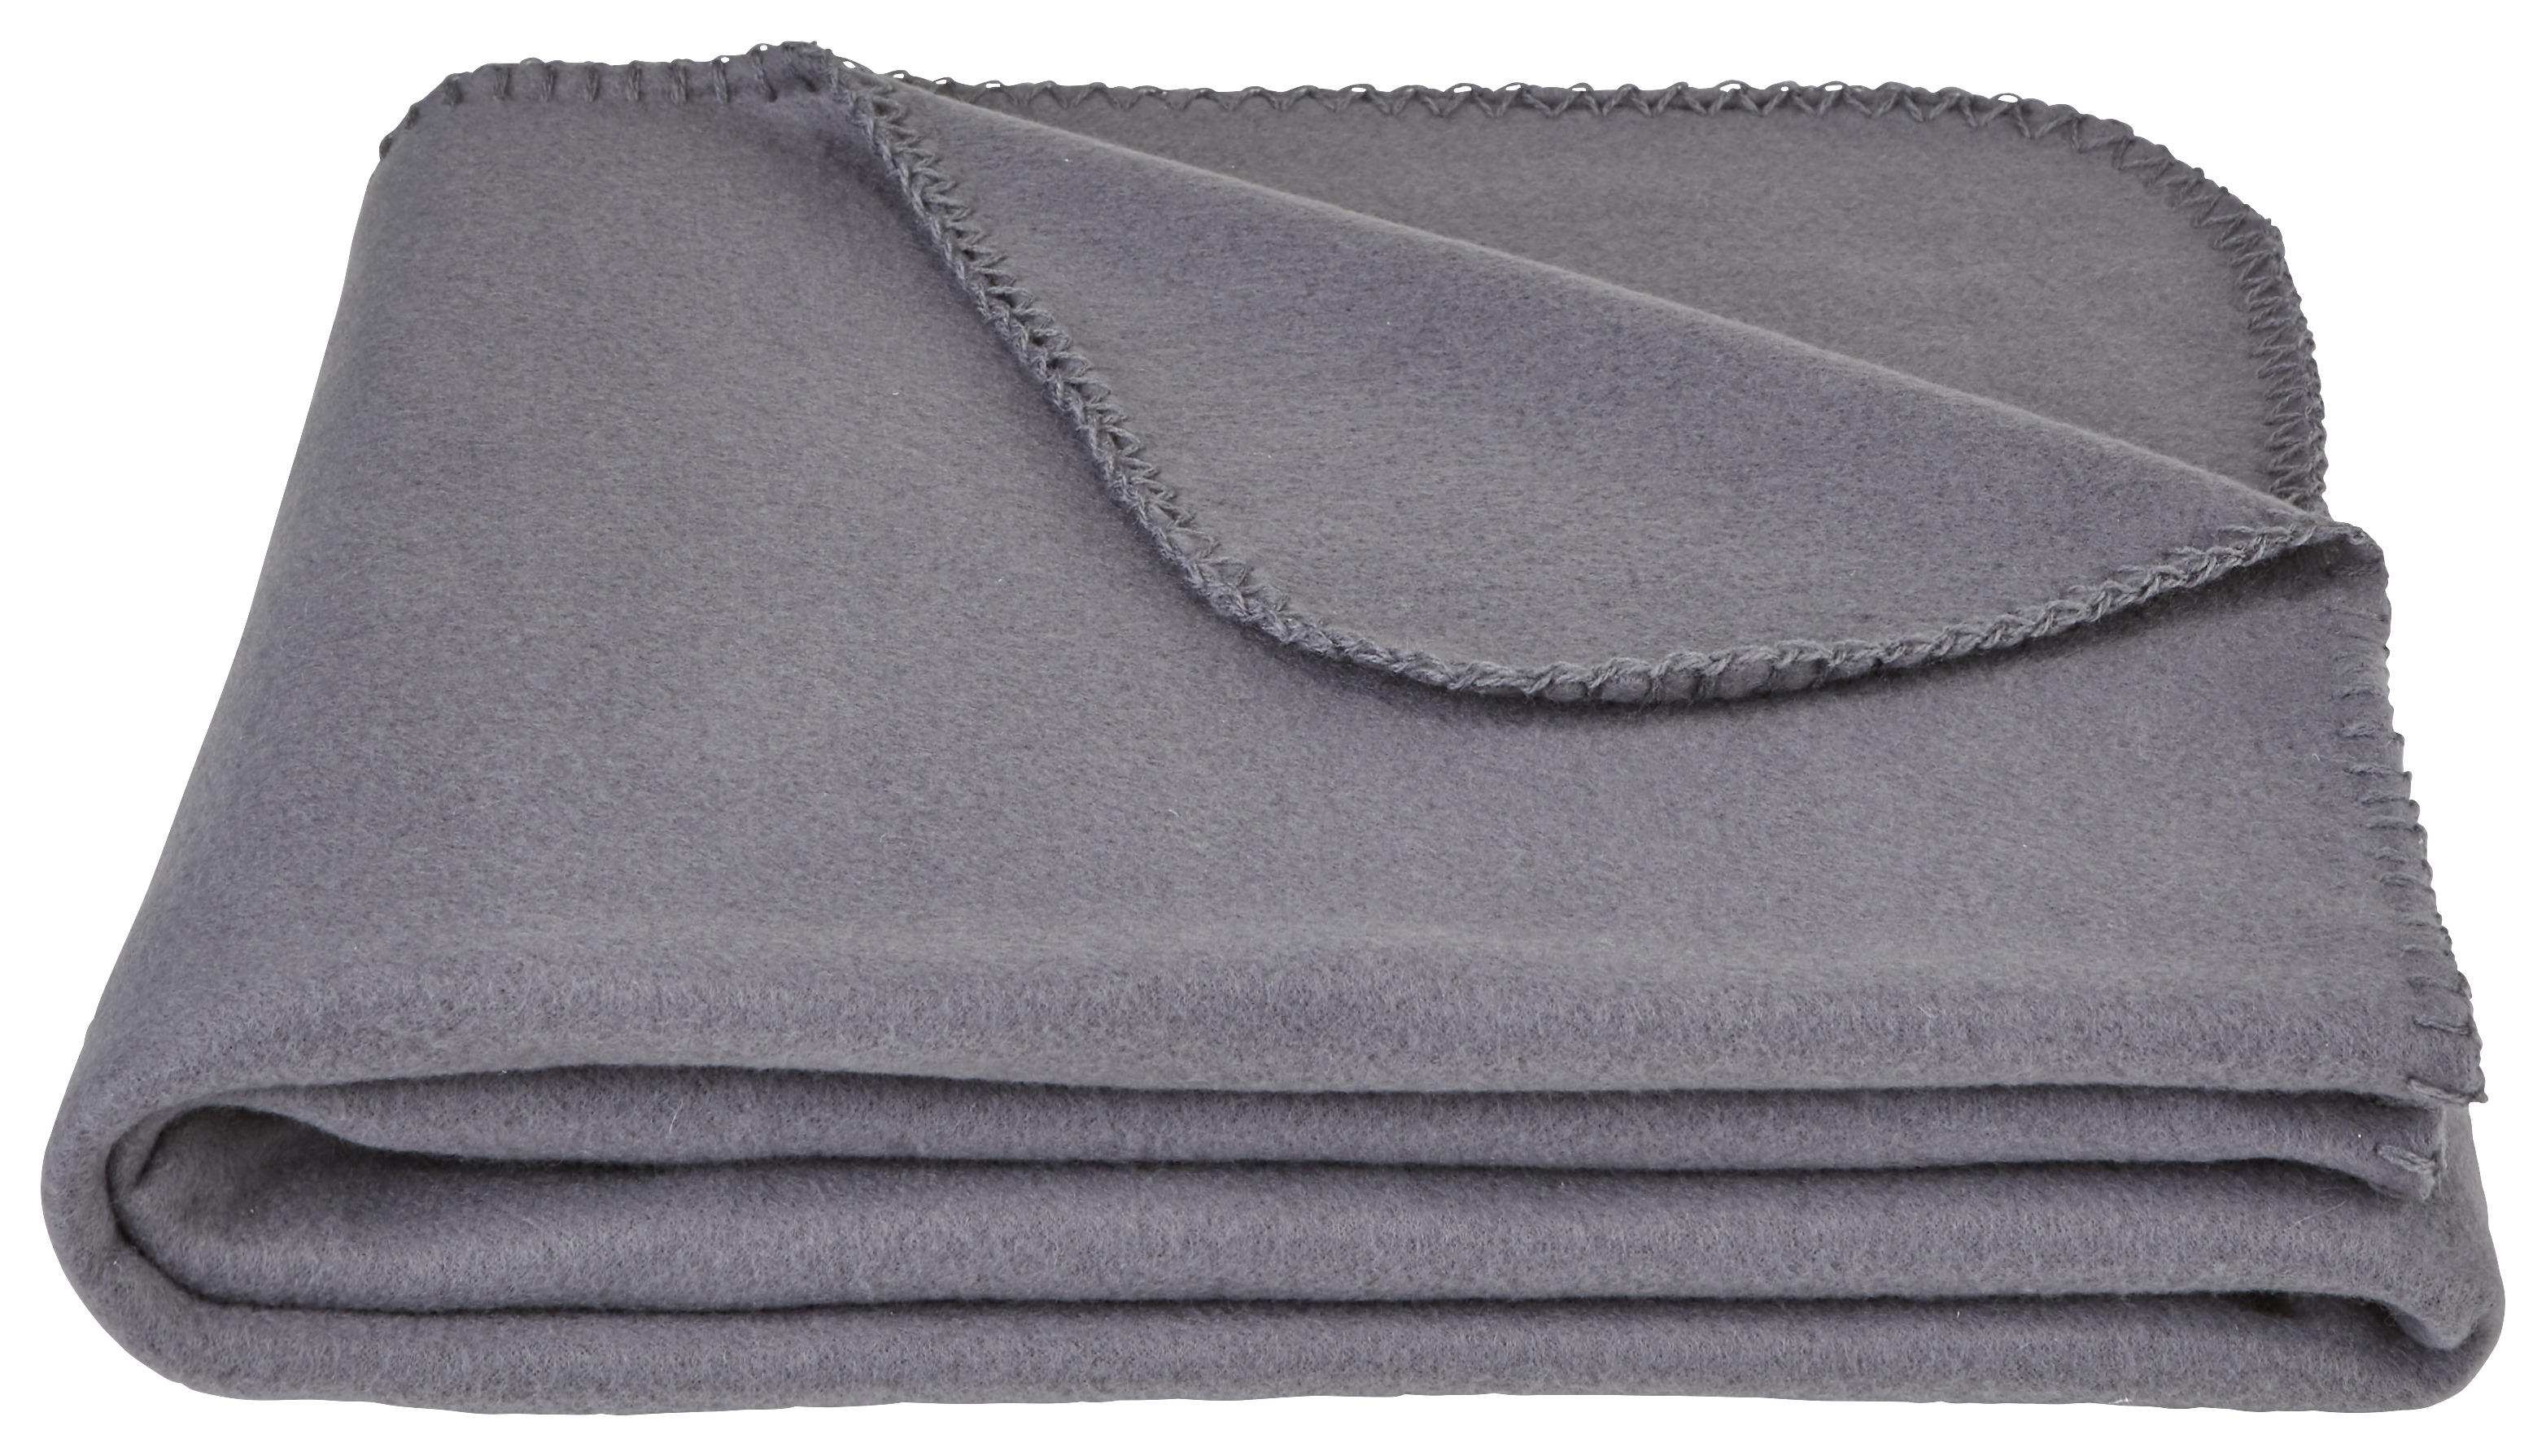 FLEECEFILT 125/150 cm  - grå, Basics, textil (125/150cm) - Boxxx